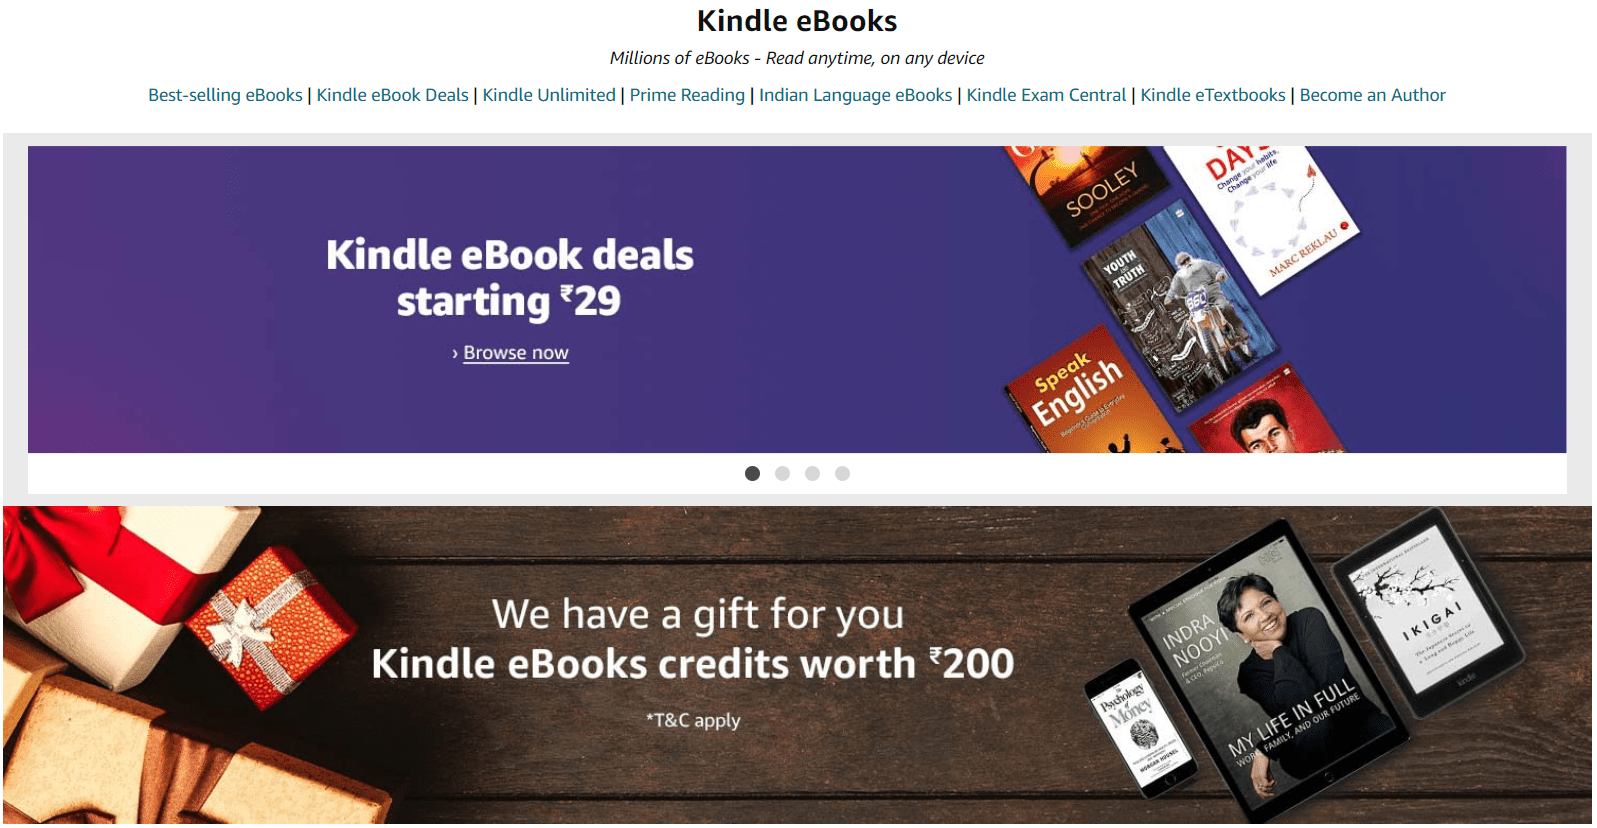 amazon kindle : Can I Merge Two Amazon Accounts